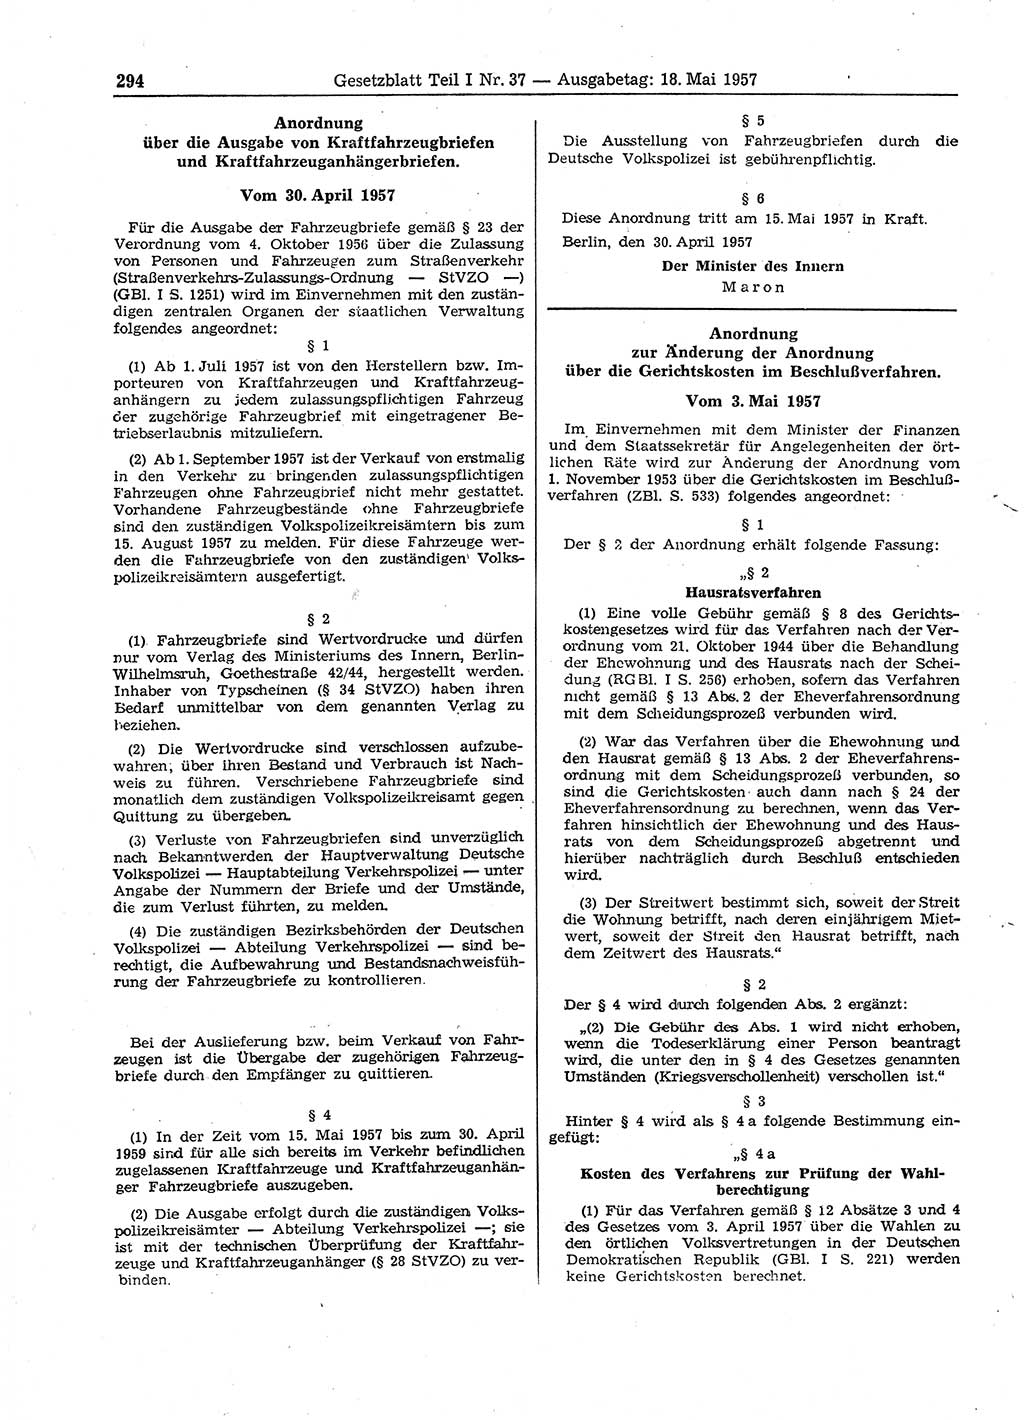 Gesetzblatt (GBl.) der Deutschen Demokratischen Republik (DDR) Teil Ⅰ 1957, Seite 294 (GBl. DDR Ⅰ 1957, S. 294)